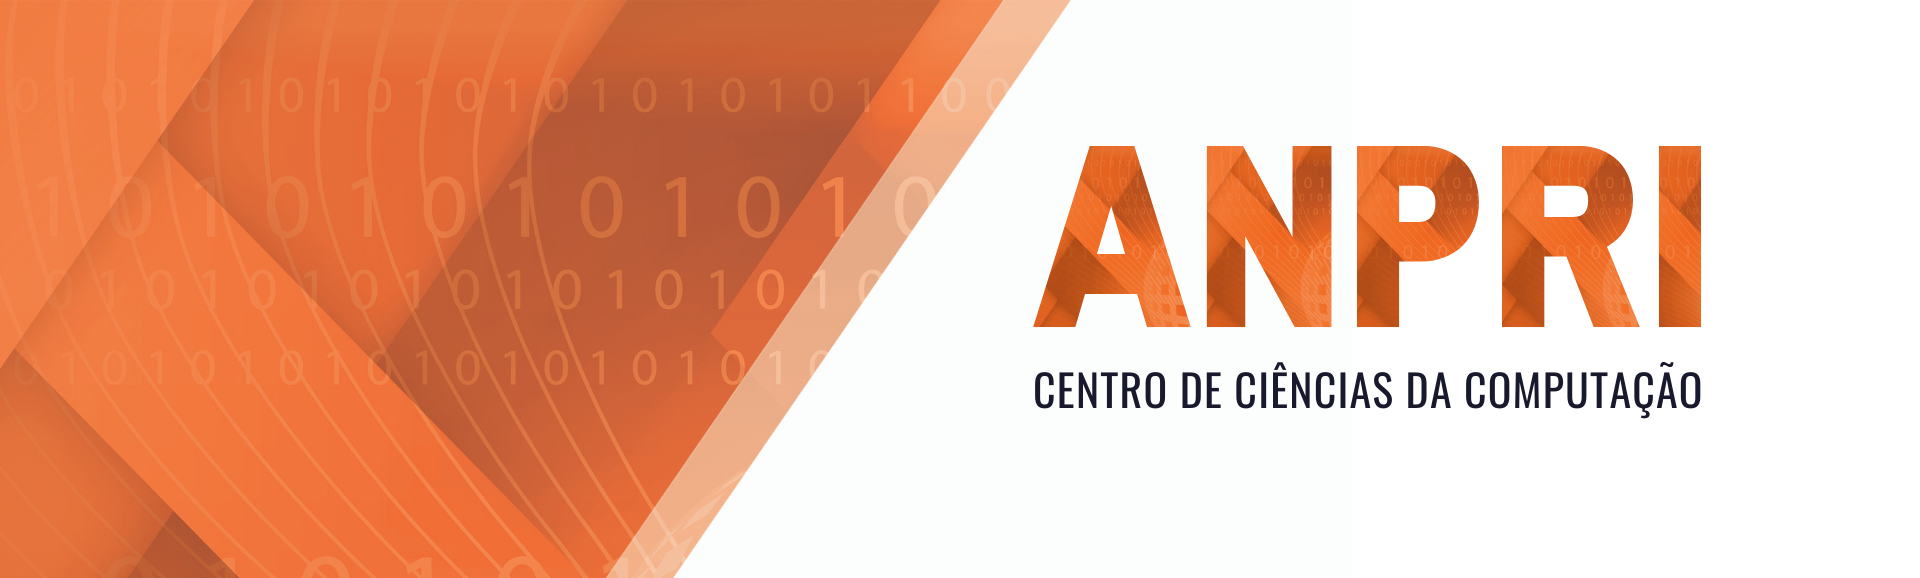 Banner Centro de Ciências da Computação